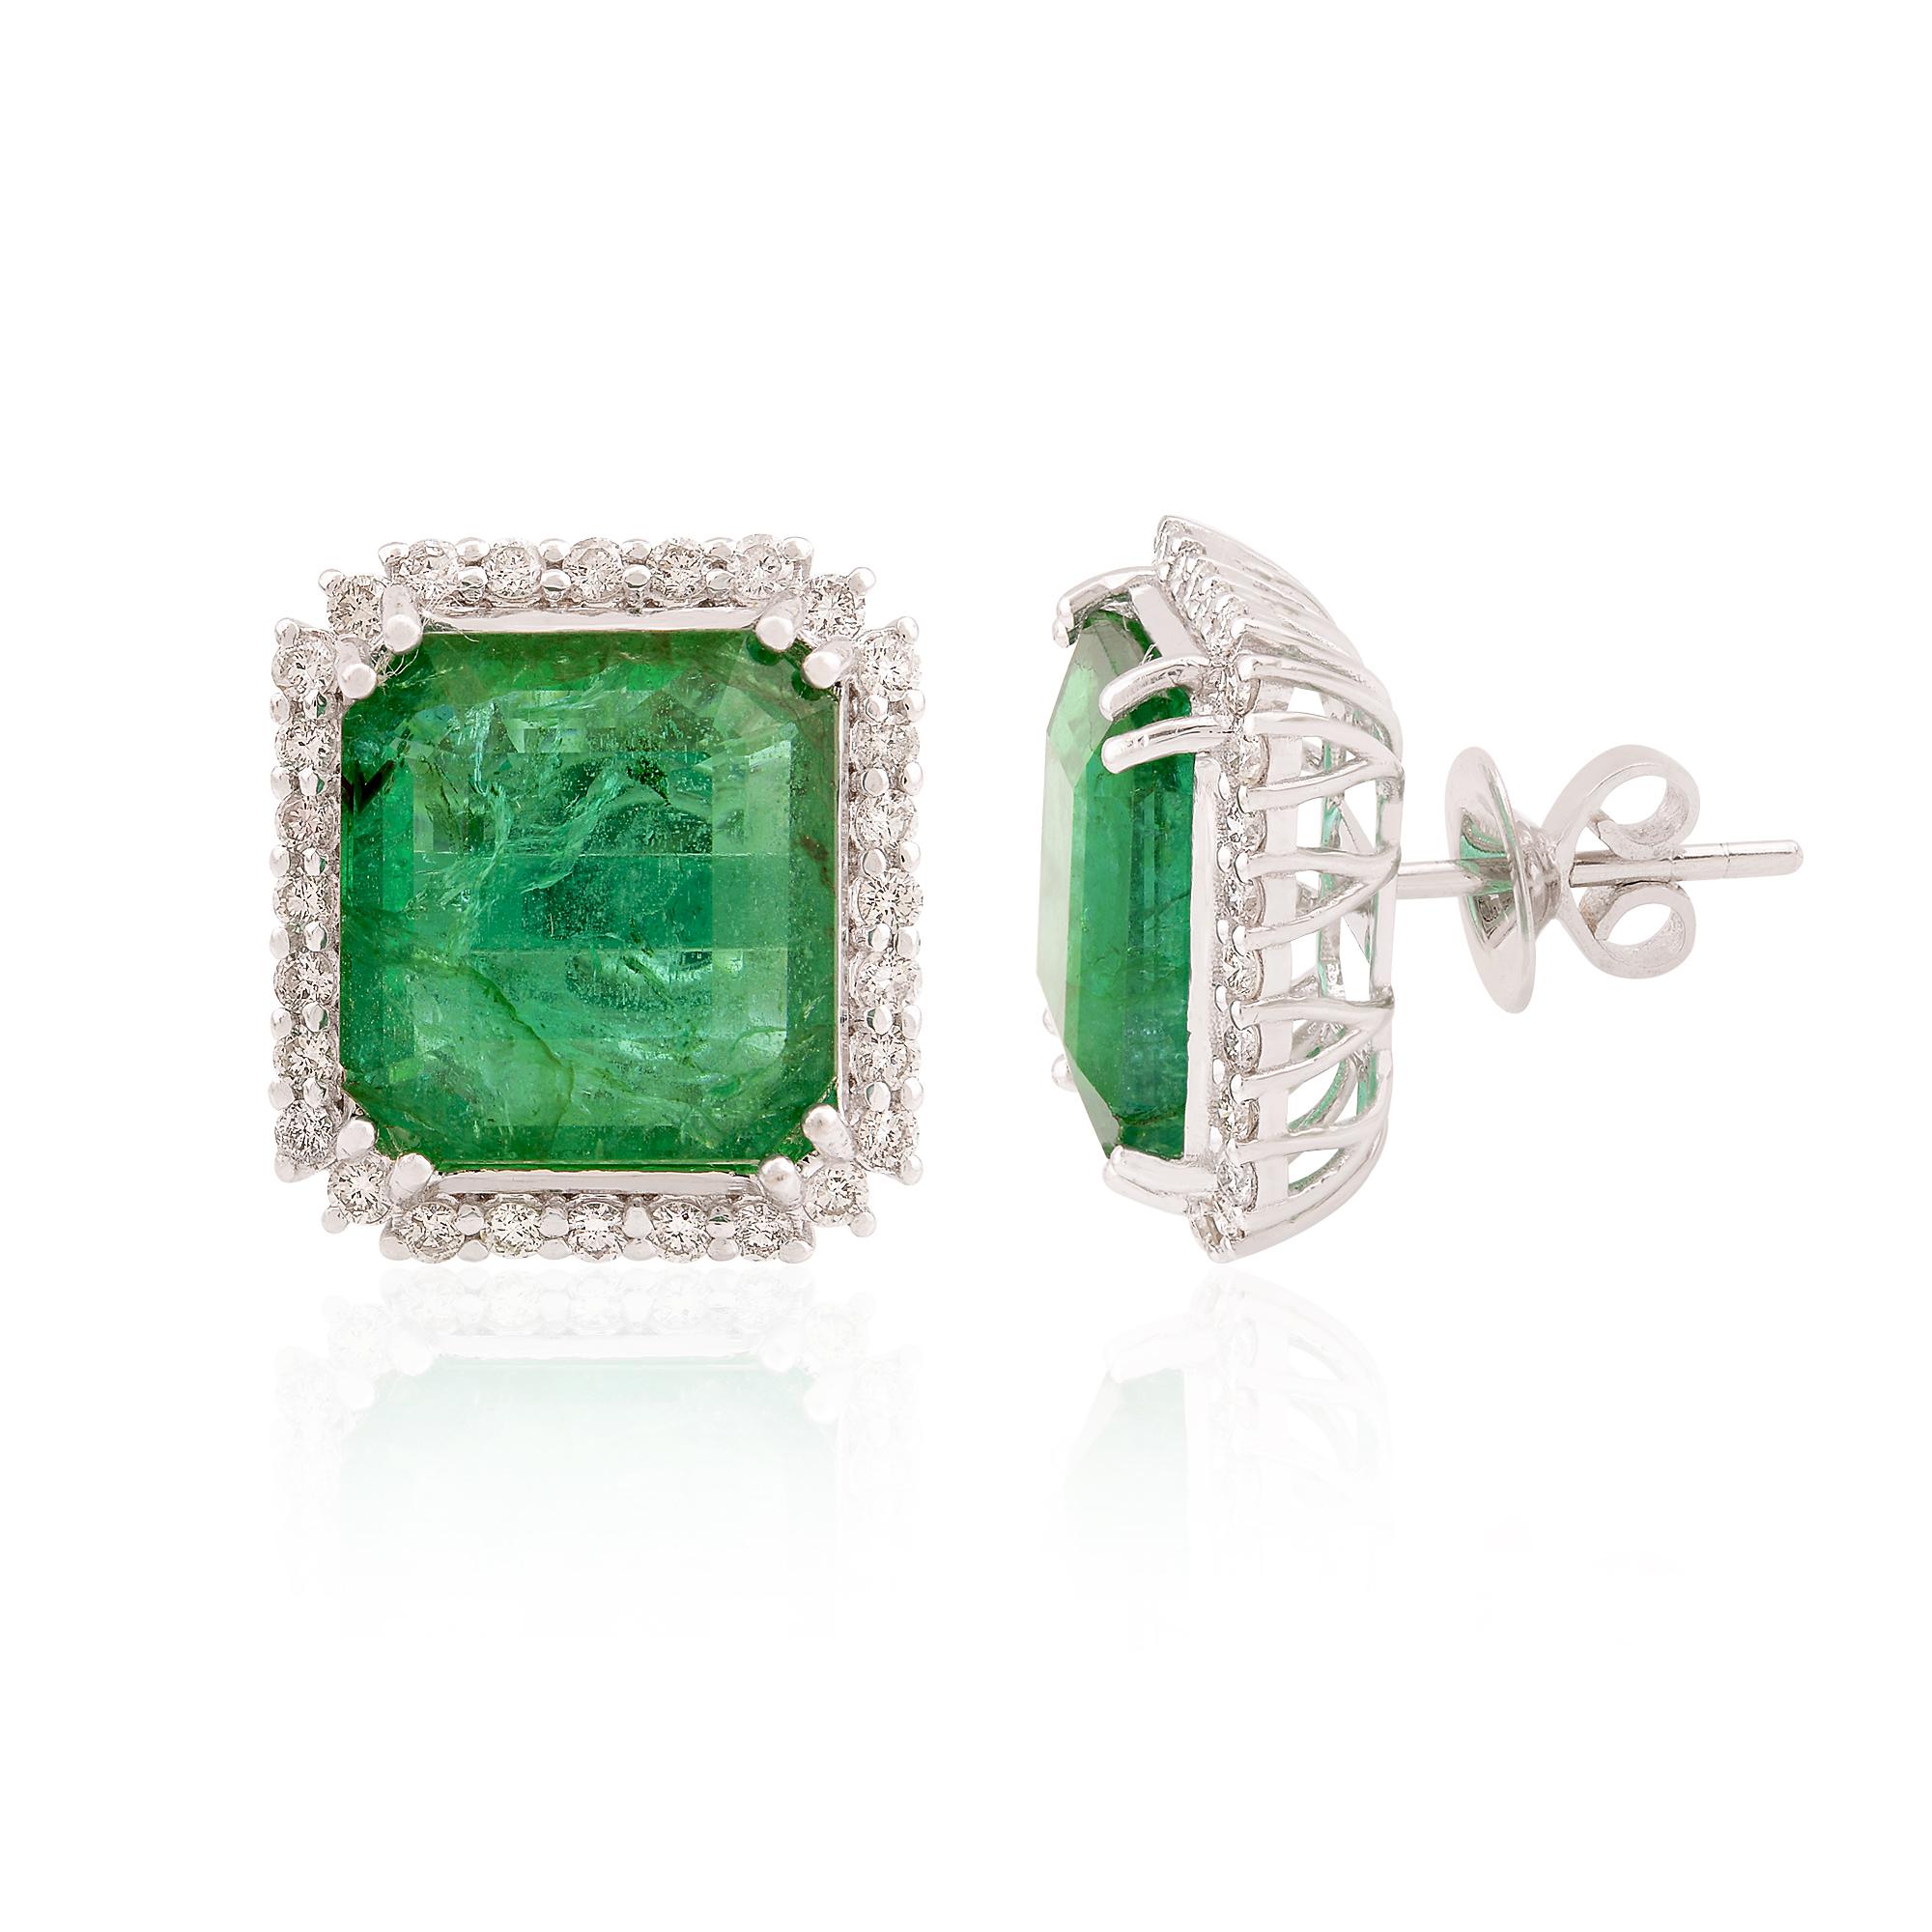 Jeder Ohrring ist mit einem bezaubernden sambischen Smaragd besetzt, der aus den reichen Minen Sambias stammt, die für die Produktion einiger der begehrtesten Smaragde der Welt bekannt sind. Der satte Grünton dieser Smaragde spiegelt die grünen